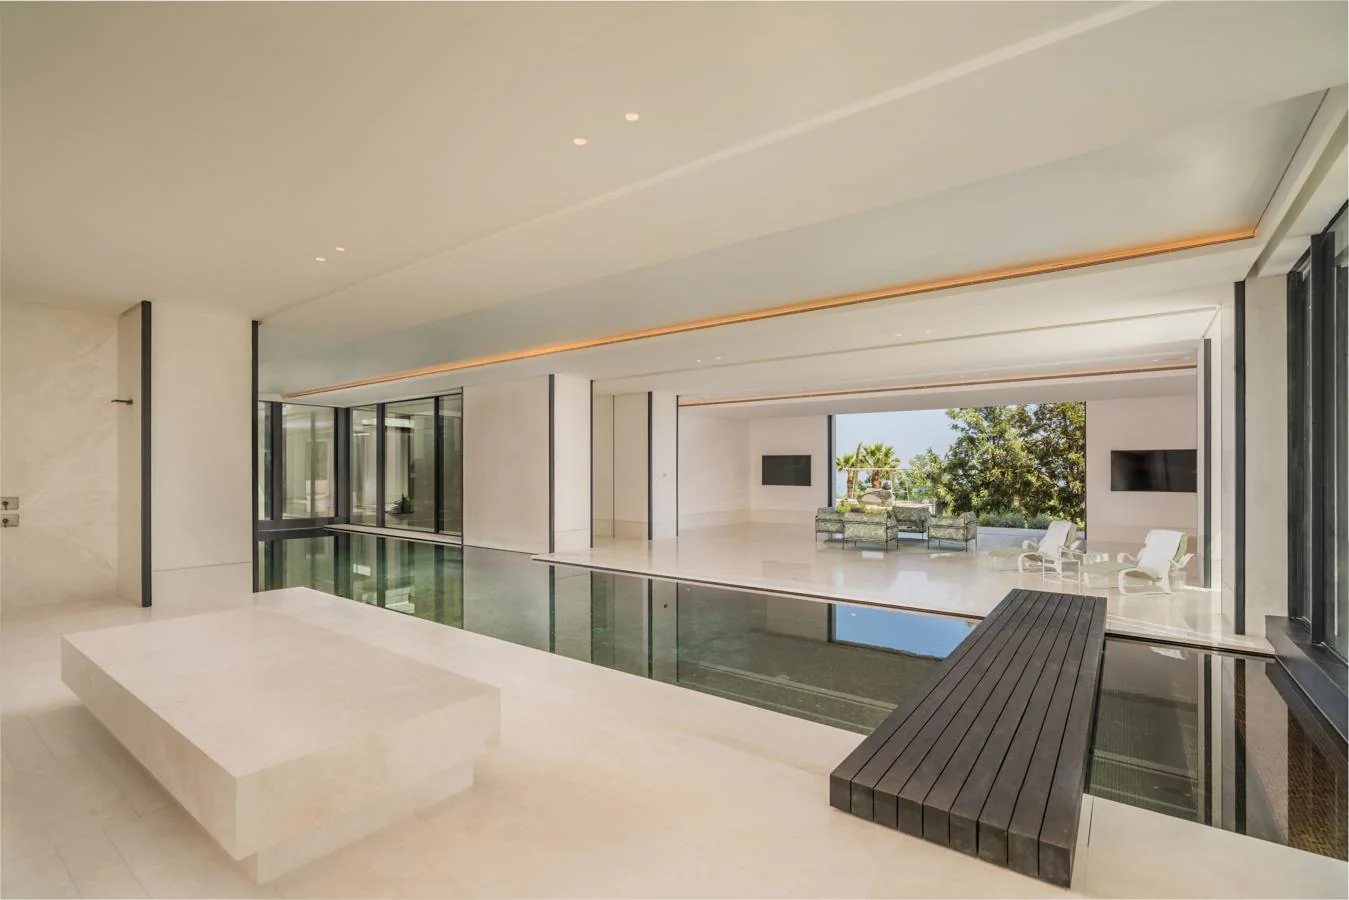 Villa Cullinam. Una piscina climatizada perfectamente integrada arquitectónicamente en la estancia es el eje vertebrador de la zona de spa